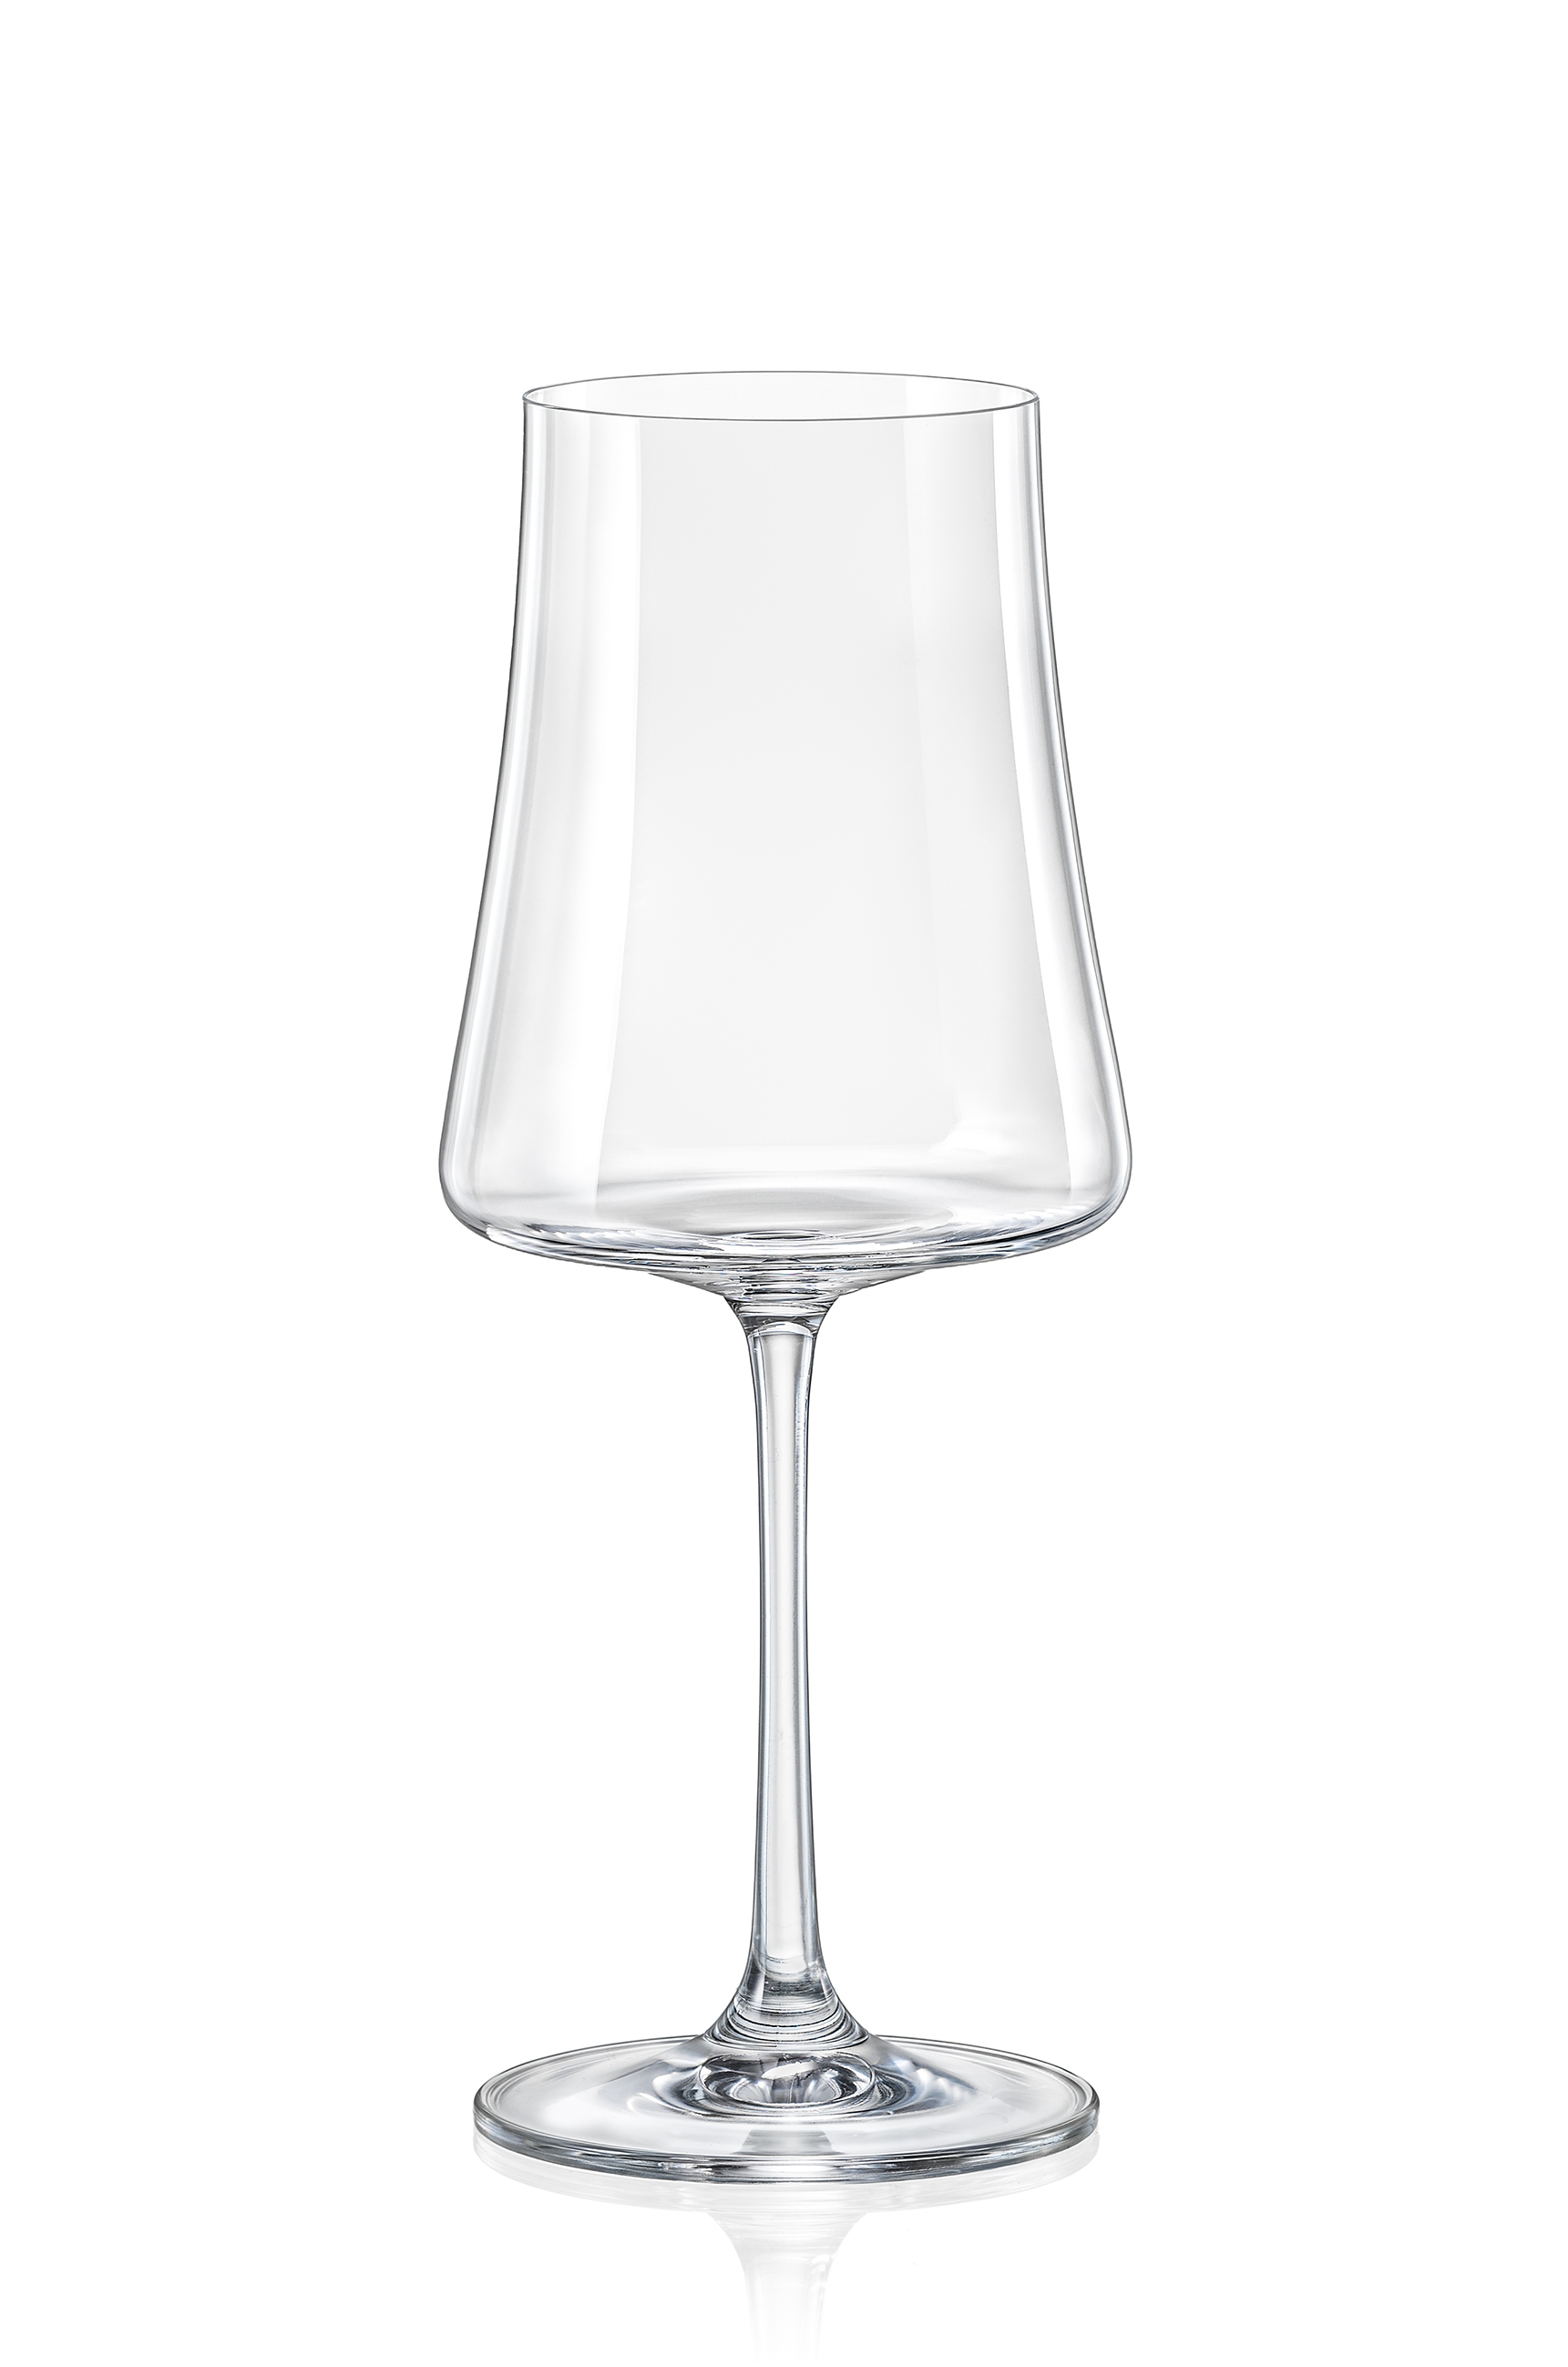 Κρύσταλλα Βοημίας Ποτήρι Κρασιού Κρυστάλλινο Bohemia Xtra 360ml CLX40862360 (Σετ 6 Τεμάχια) (Υλικό: Κρύσταλλο, Χρώμα: Διάφανο , Μέγεθος: Κολωνάτο) - Κρύσταλλα Βοημίας - CLX40862360